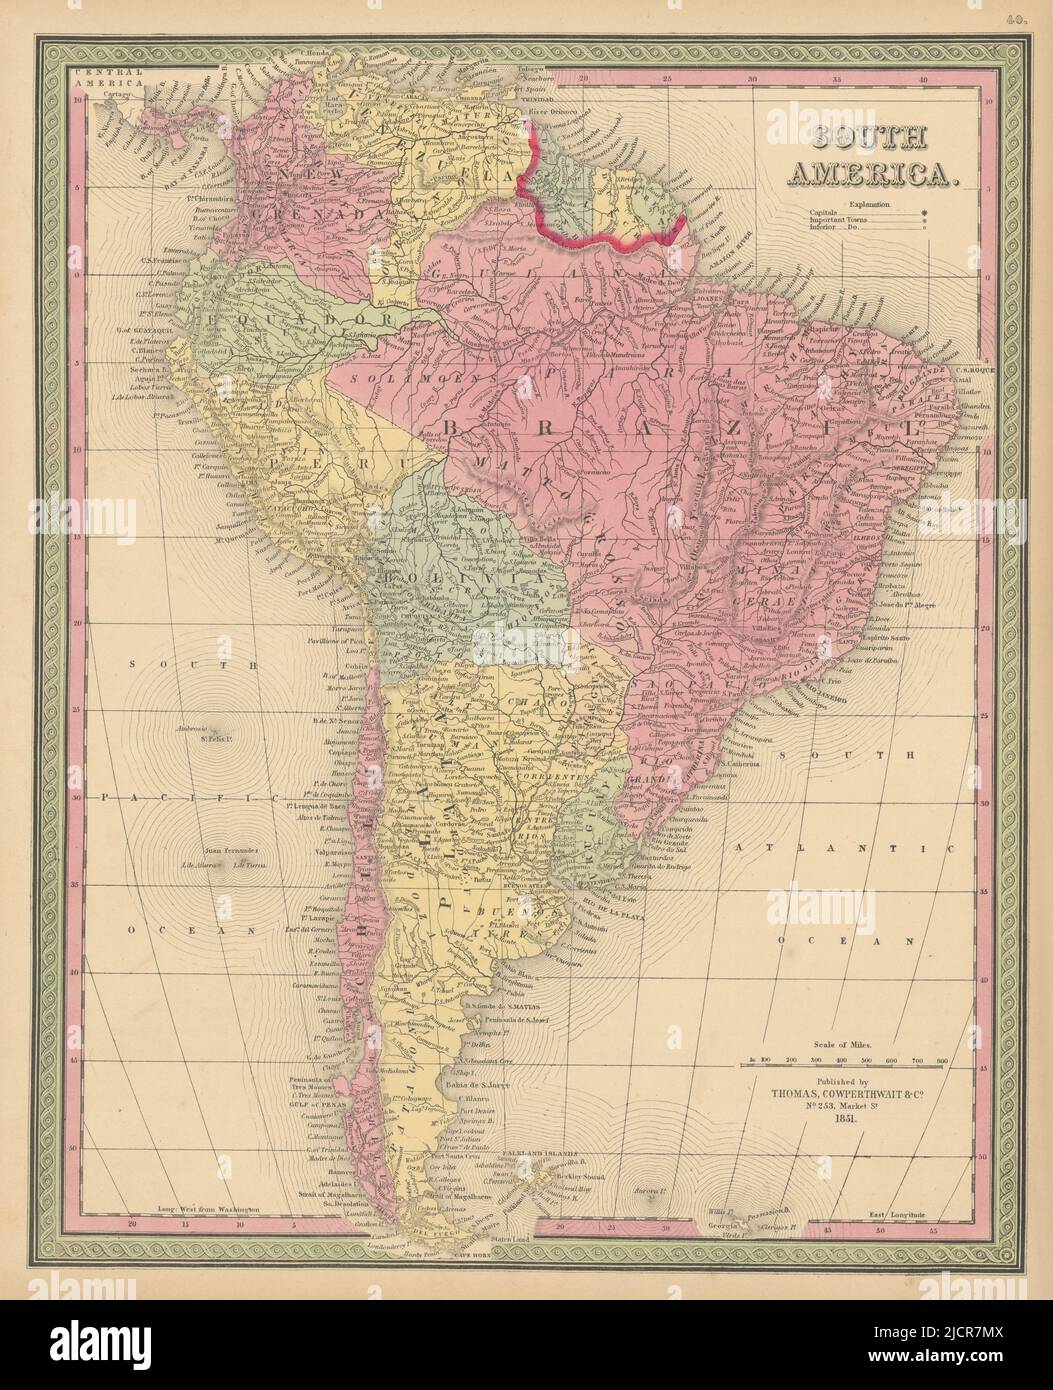 Sud America. Brasile la Plata Perù Equador Chili Uruguay. Mappa COWPERTHWAIT 1852 Foto Stock